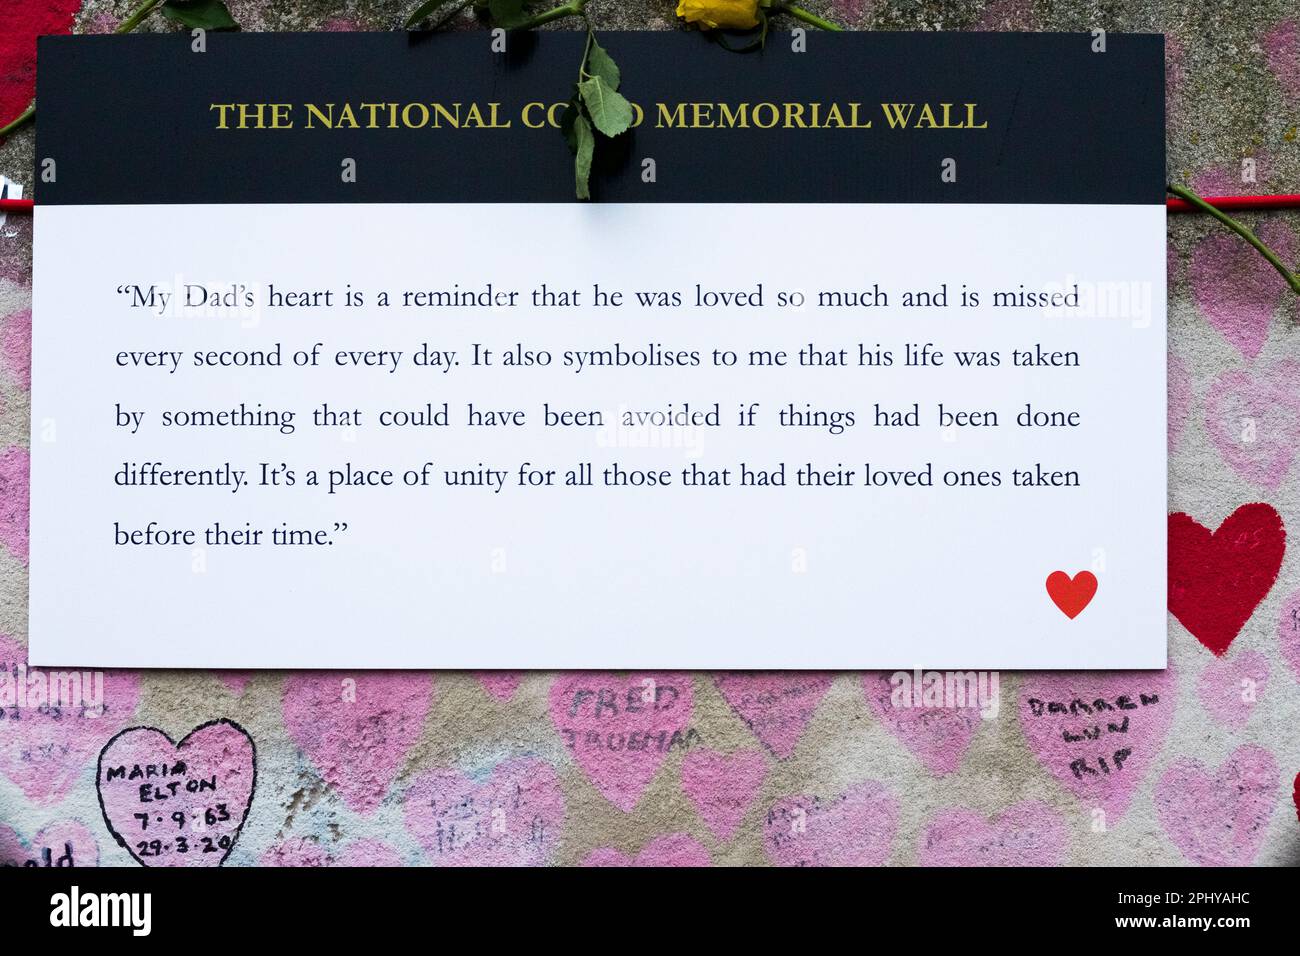 Plaque temporaire à l'aide d'une citation d'une personne endeuillée lors de la commémoration du deuxième anniversaire du mur commémoratif national du COVID. Banque D'Images